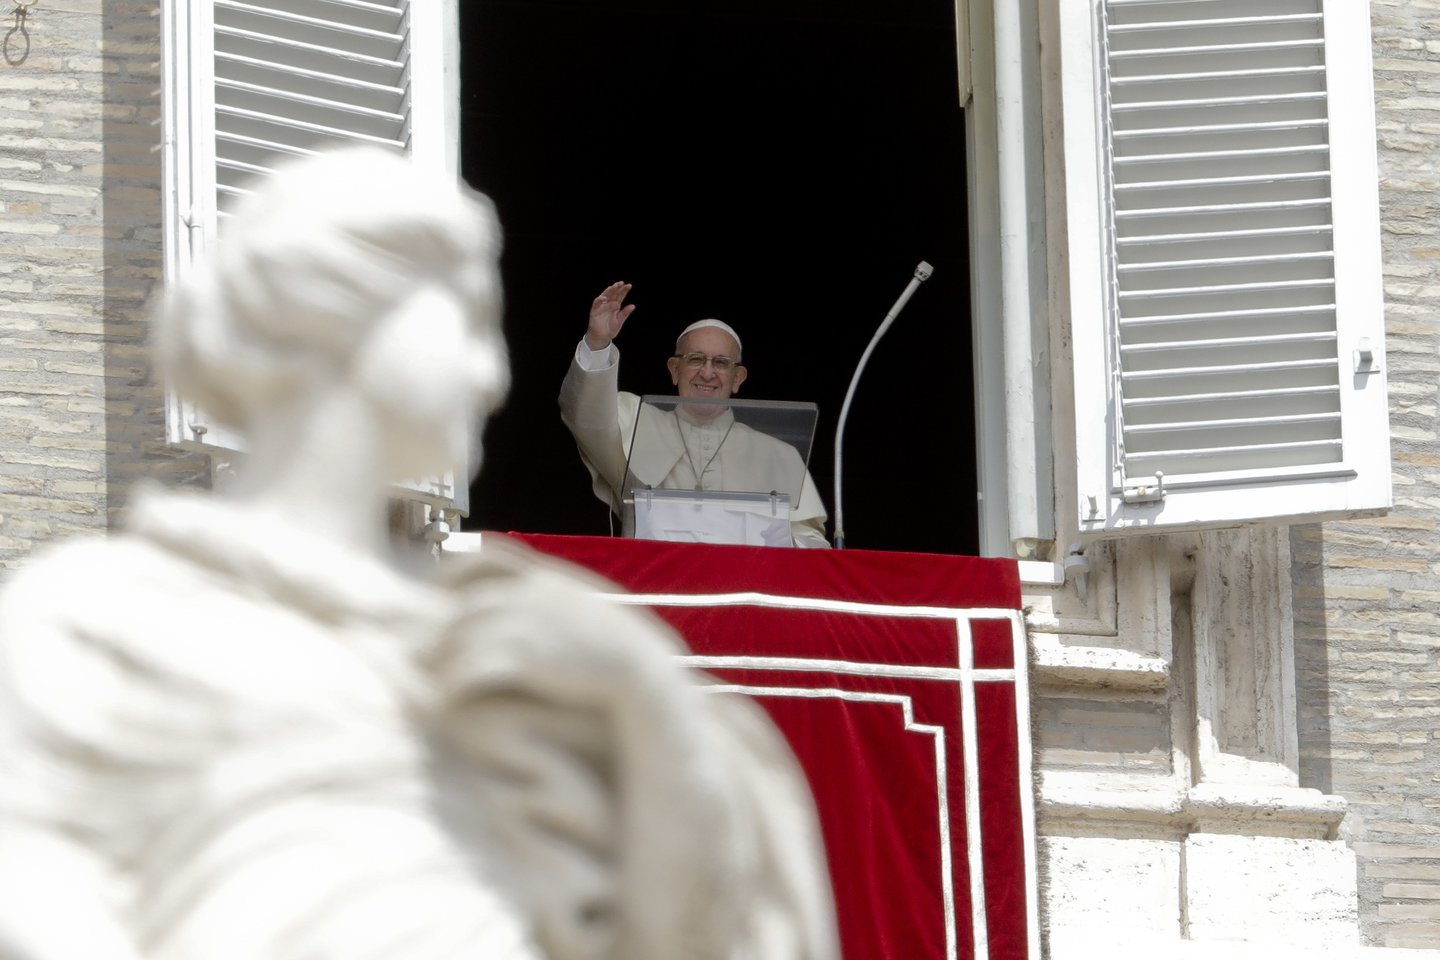  Popiežius Pranciškus yra daugiau nei 300 kunigų pedofilų Jungtinėse Valstijose, kaltinamų per septynis dešimtmečius lytiškai išnaudojus per tūkstantį vaikų, aukų pusėje, ketvirtadienį pareiškė Vatikanas.<br> AP nuotr.